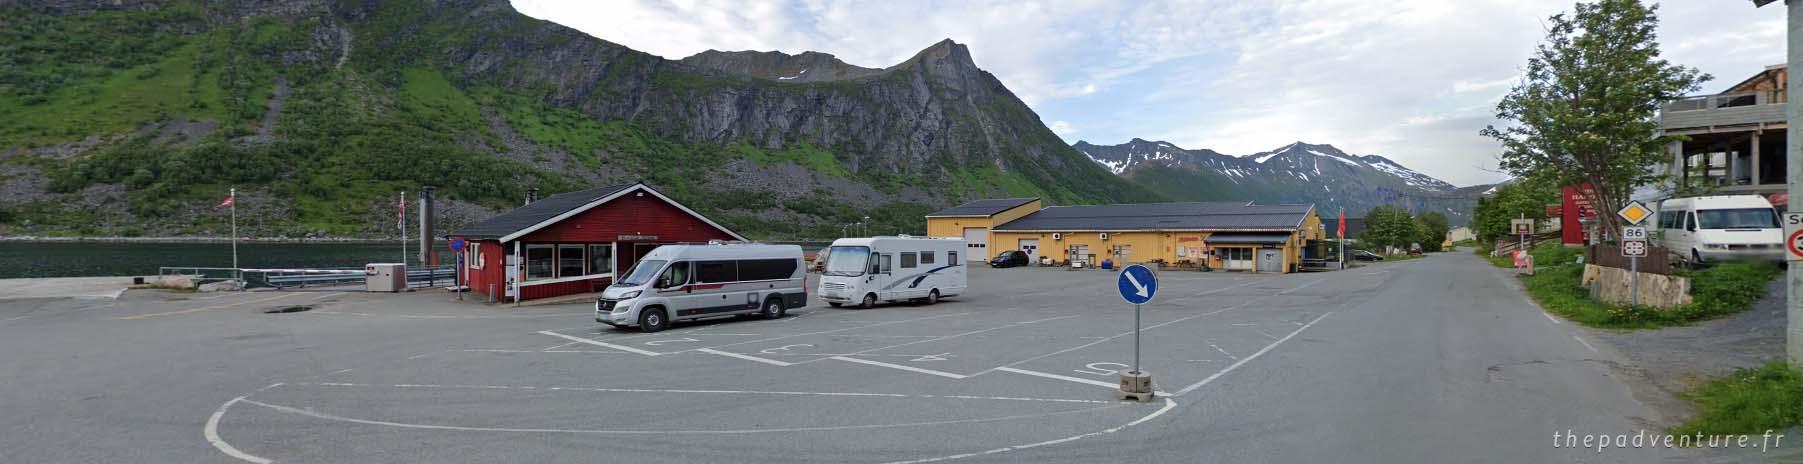 quai de ferry numeroté en norvege